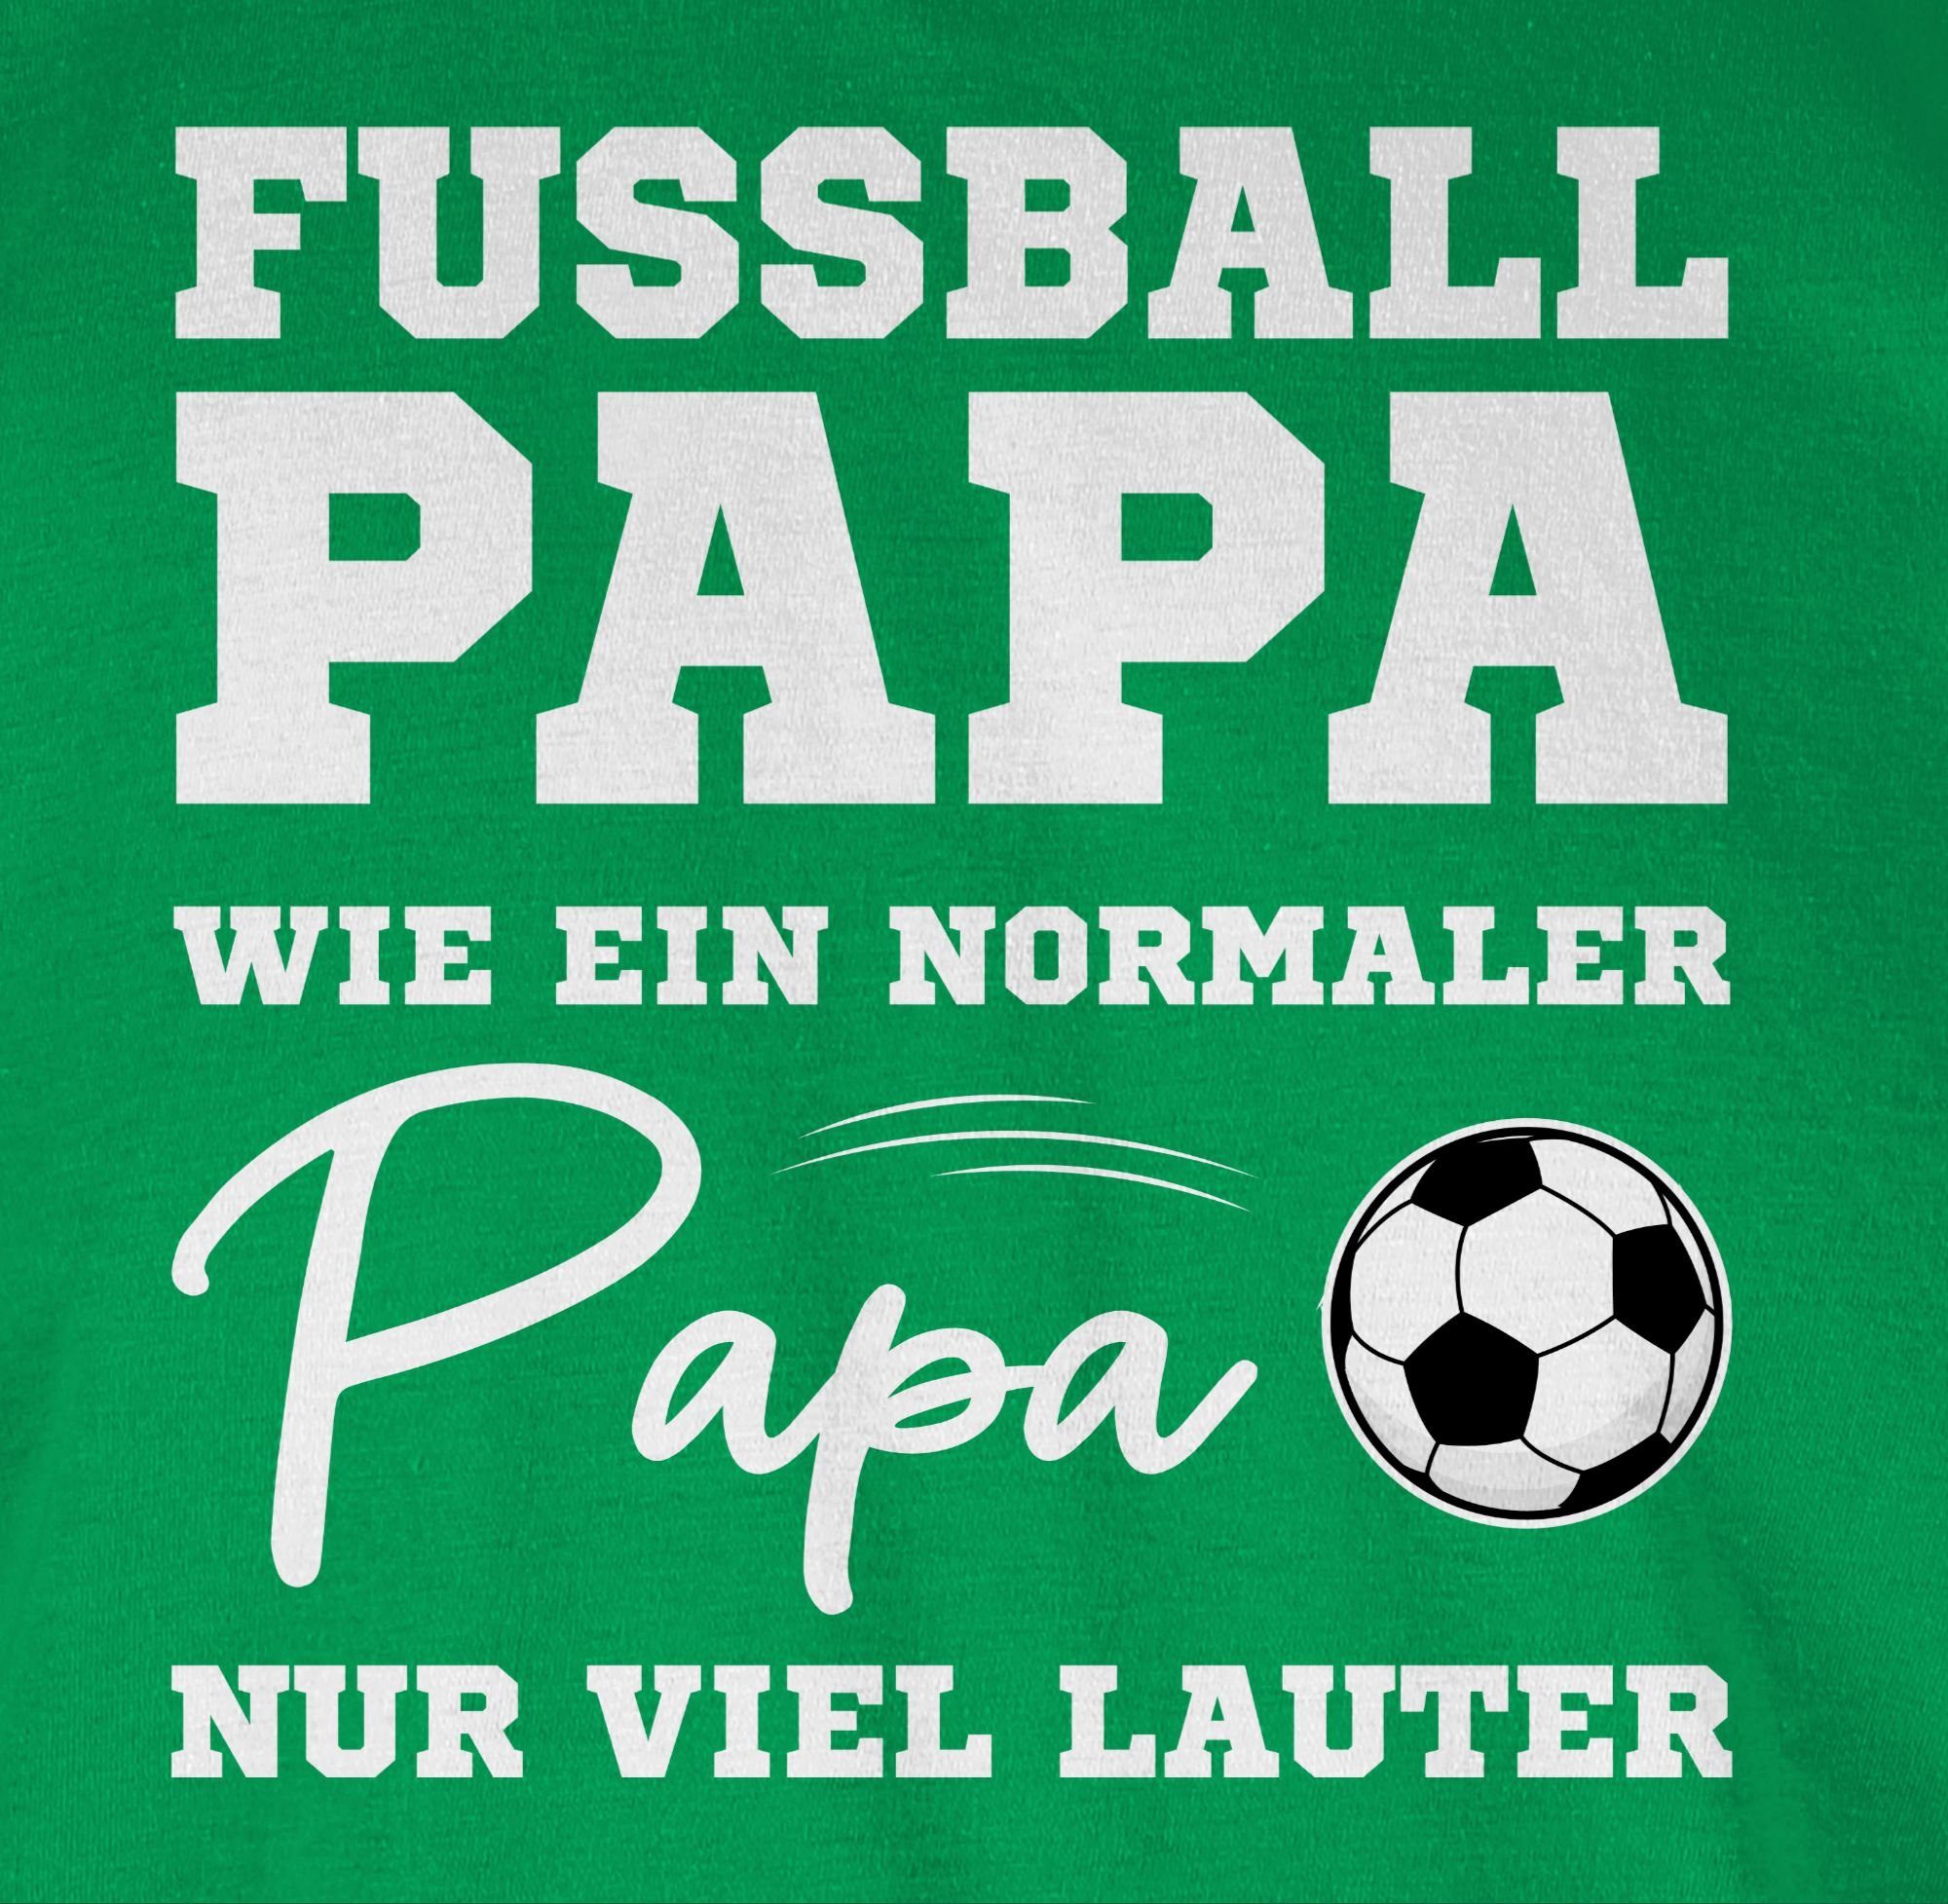 T-Shirt Grün EM Shirtracer lauter wie nur ein 02 Papa weiß viel normaler Fussball Papa 2024 Fußball